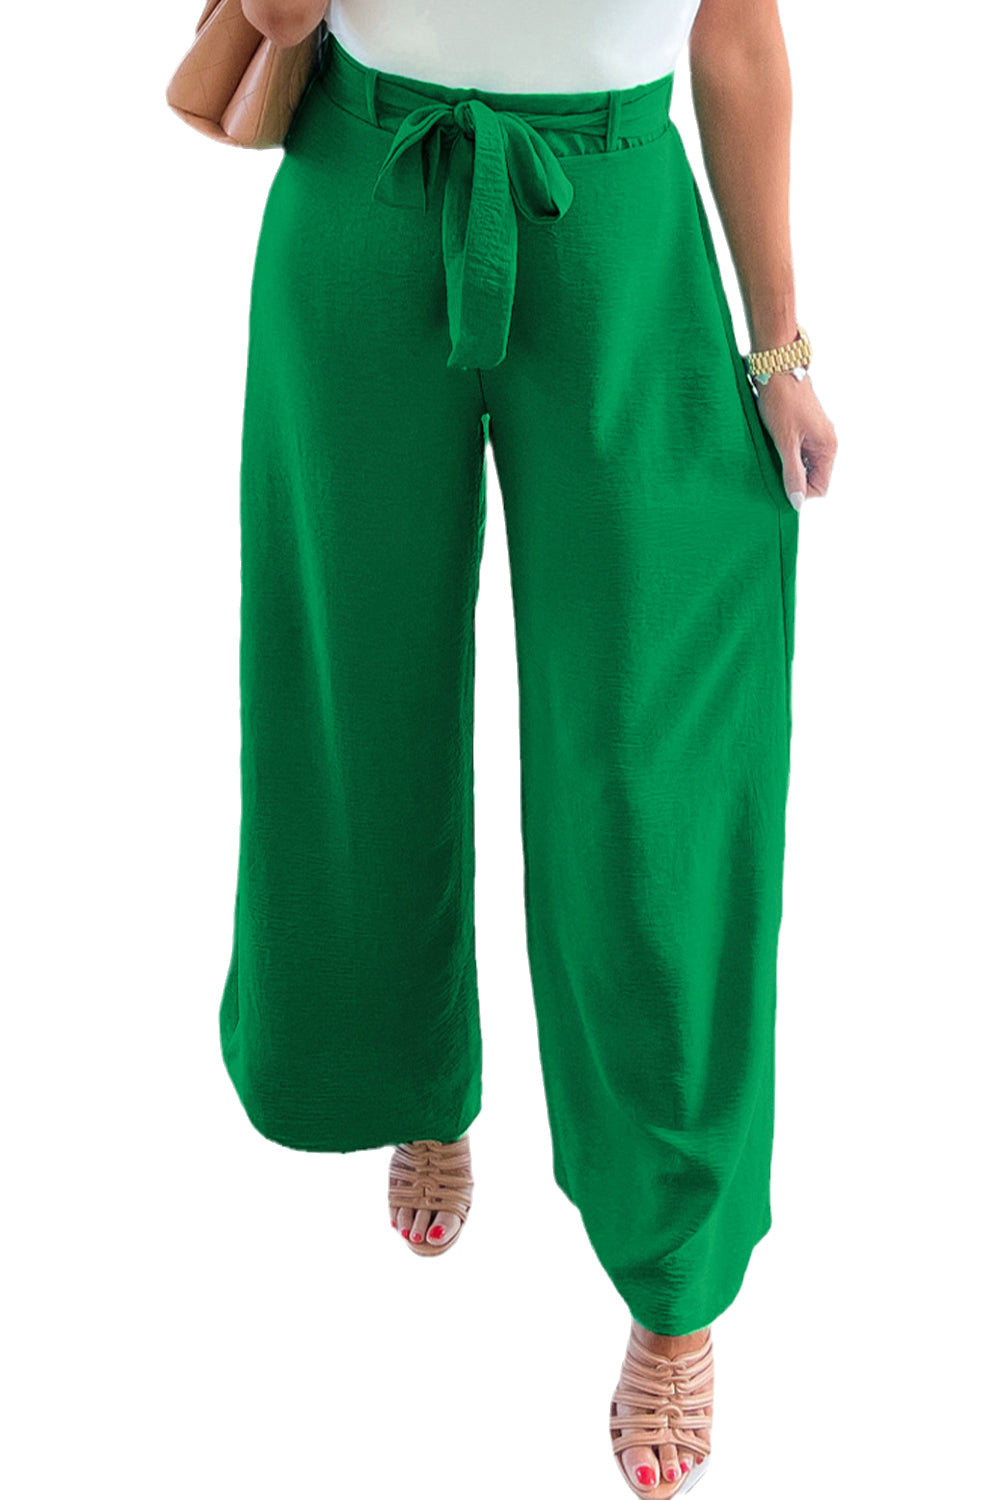 Svetlo zelene široke hlače z visokim pasom in zankami